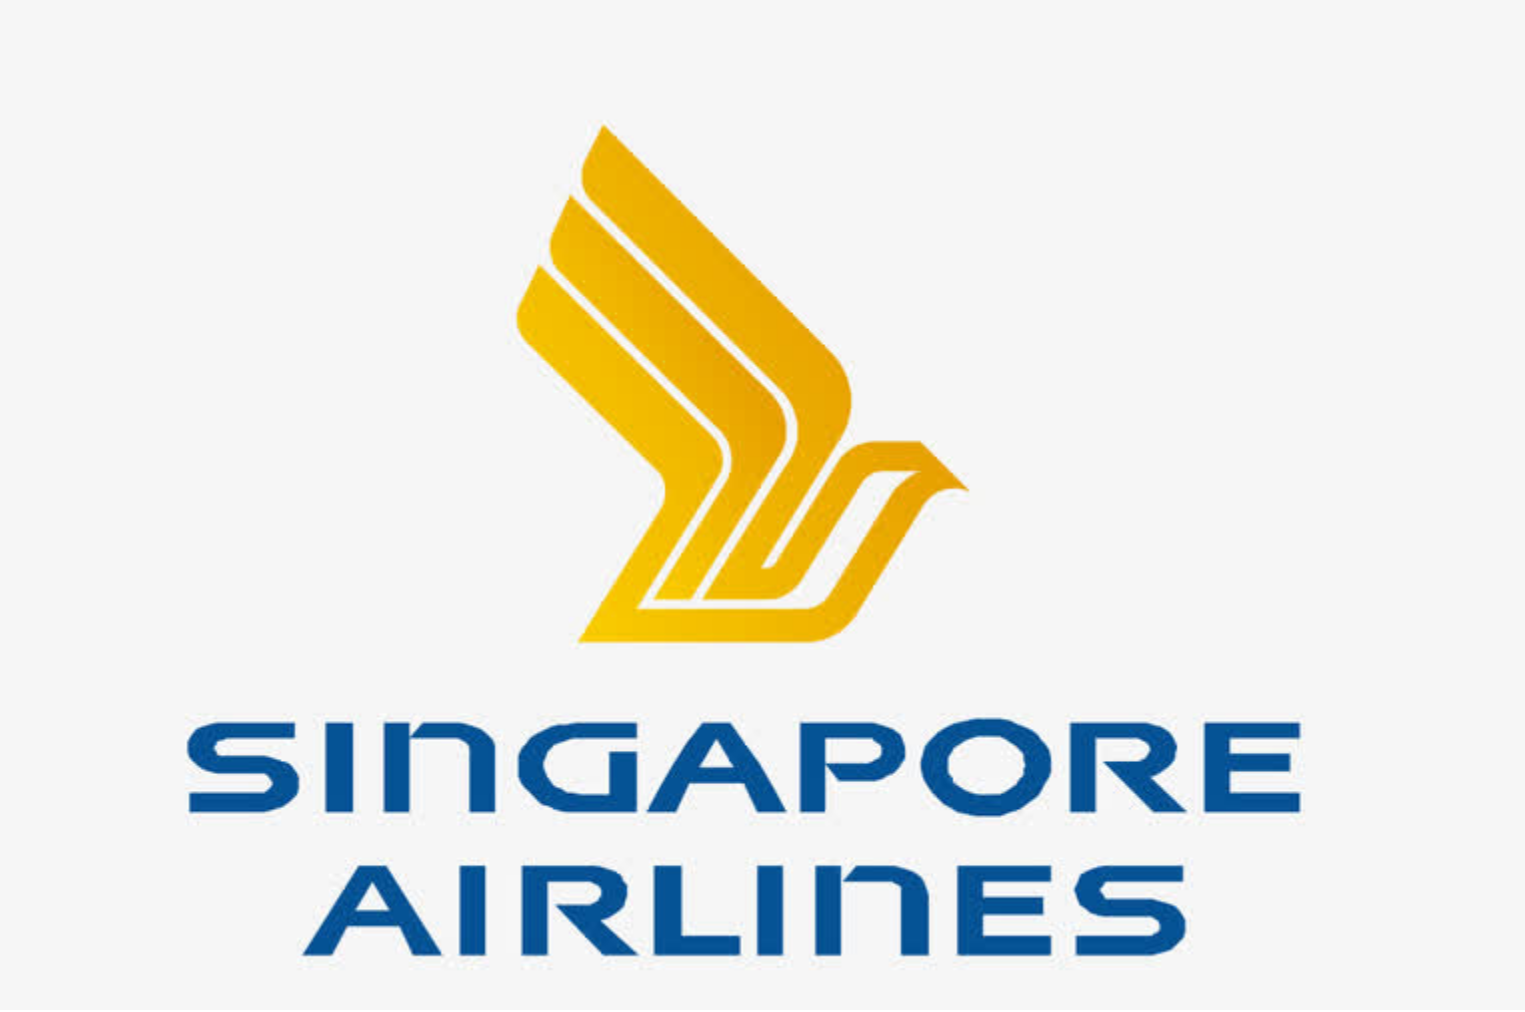 新加坡航空连任世界一级方程式锦标赛新加坡大奖赛冠名赞助商 